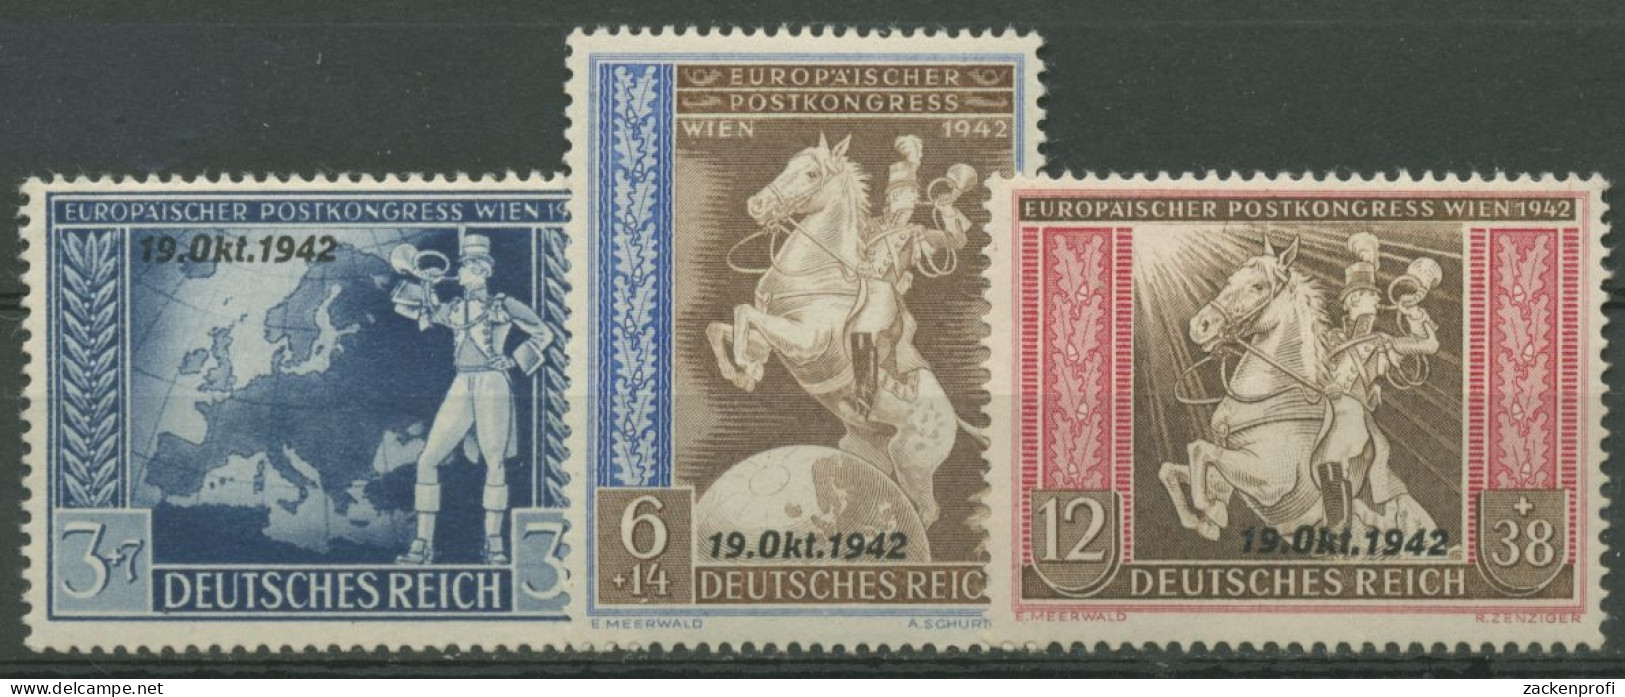 Deutsches Reich 1942 Postkongress Mit Aufdruck 823/25 Mit Falz - Ongebruikt